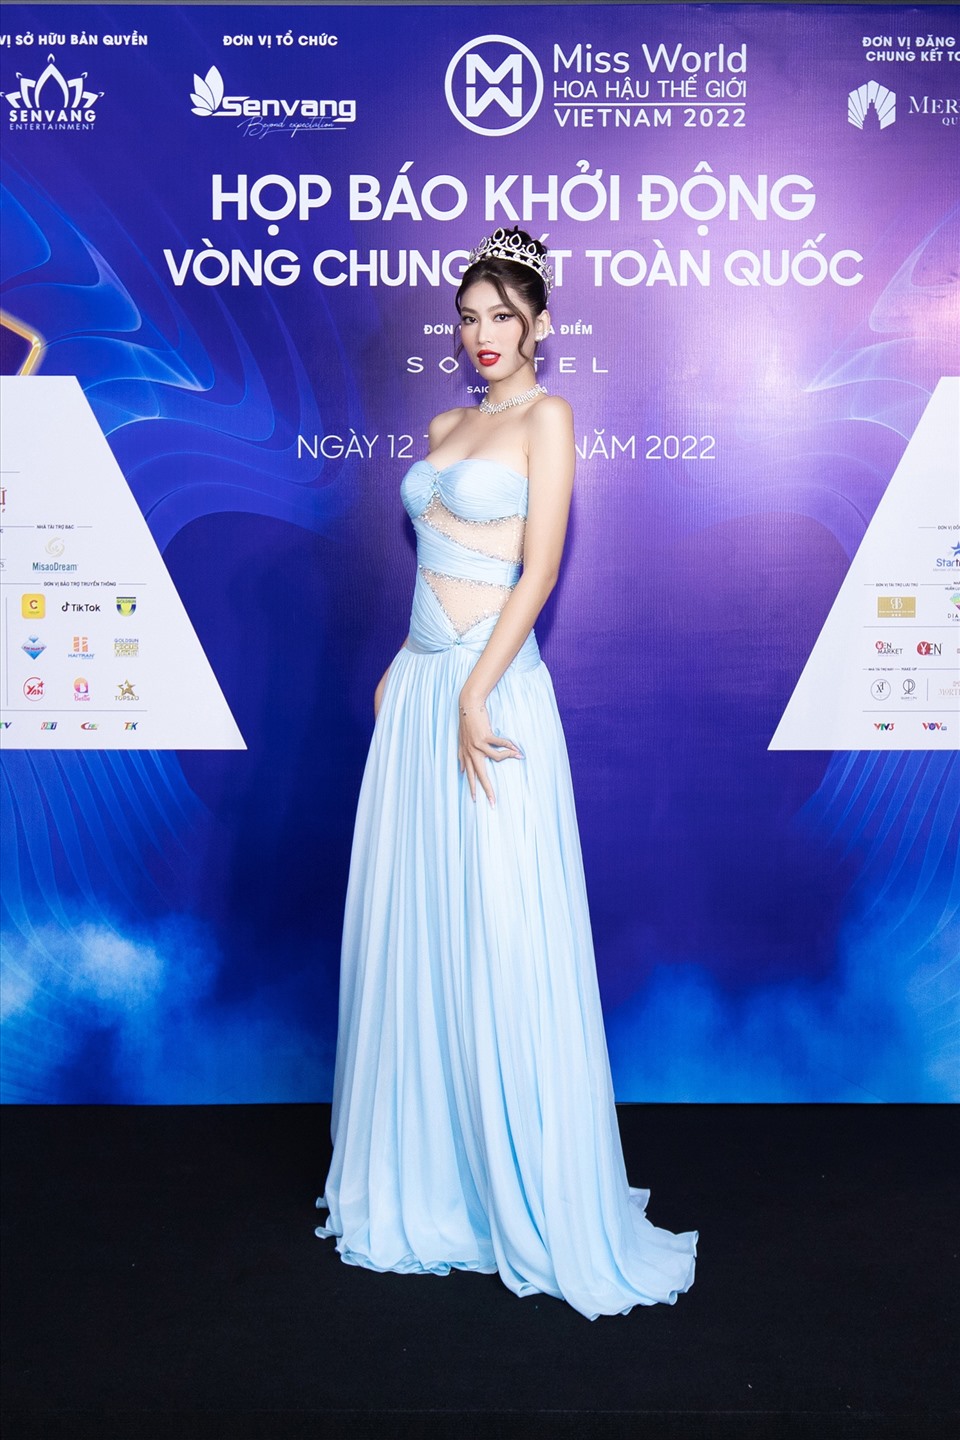 Chiếc váy xanh pastel dịu dàng nhưng với những đường cắt xẻ phần eo đã làm sự xuất hiện của Á hậu Ngọc Thảo thêm phần thu hút. Ảnh: Sen Vàng.